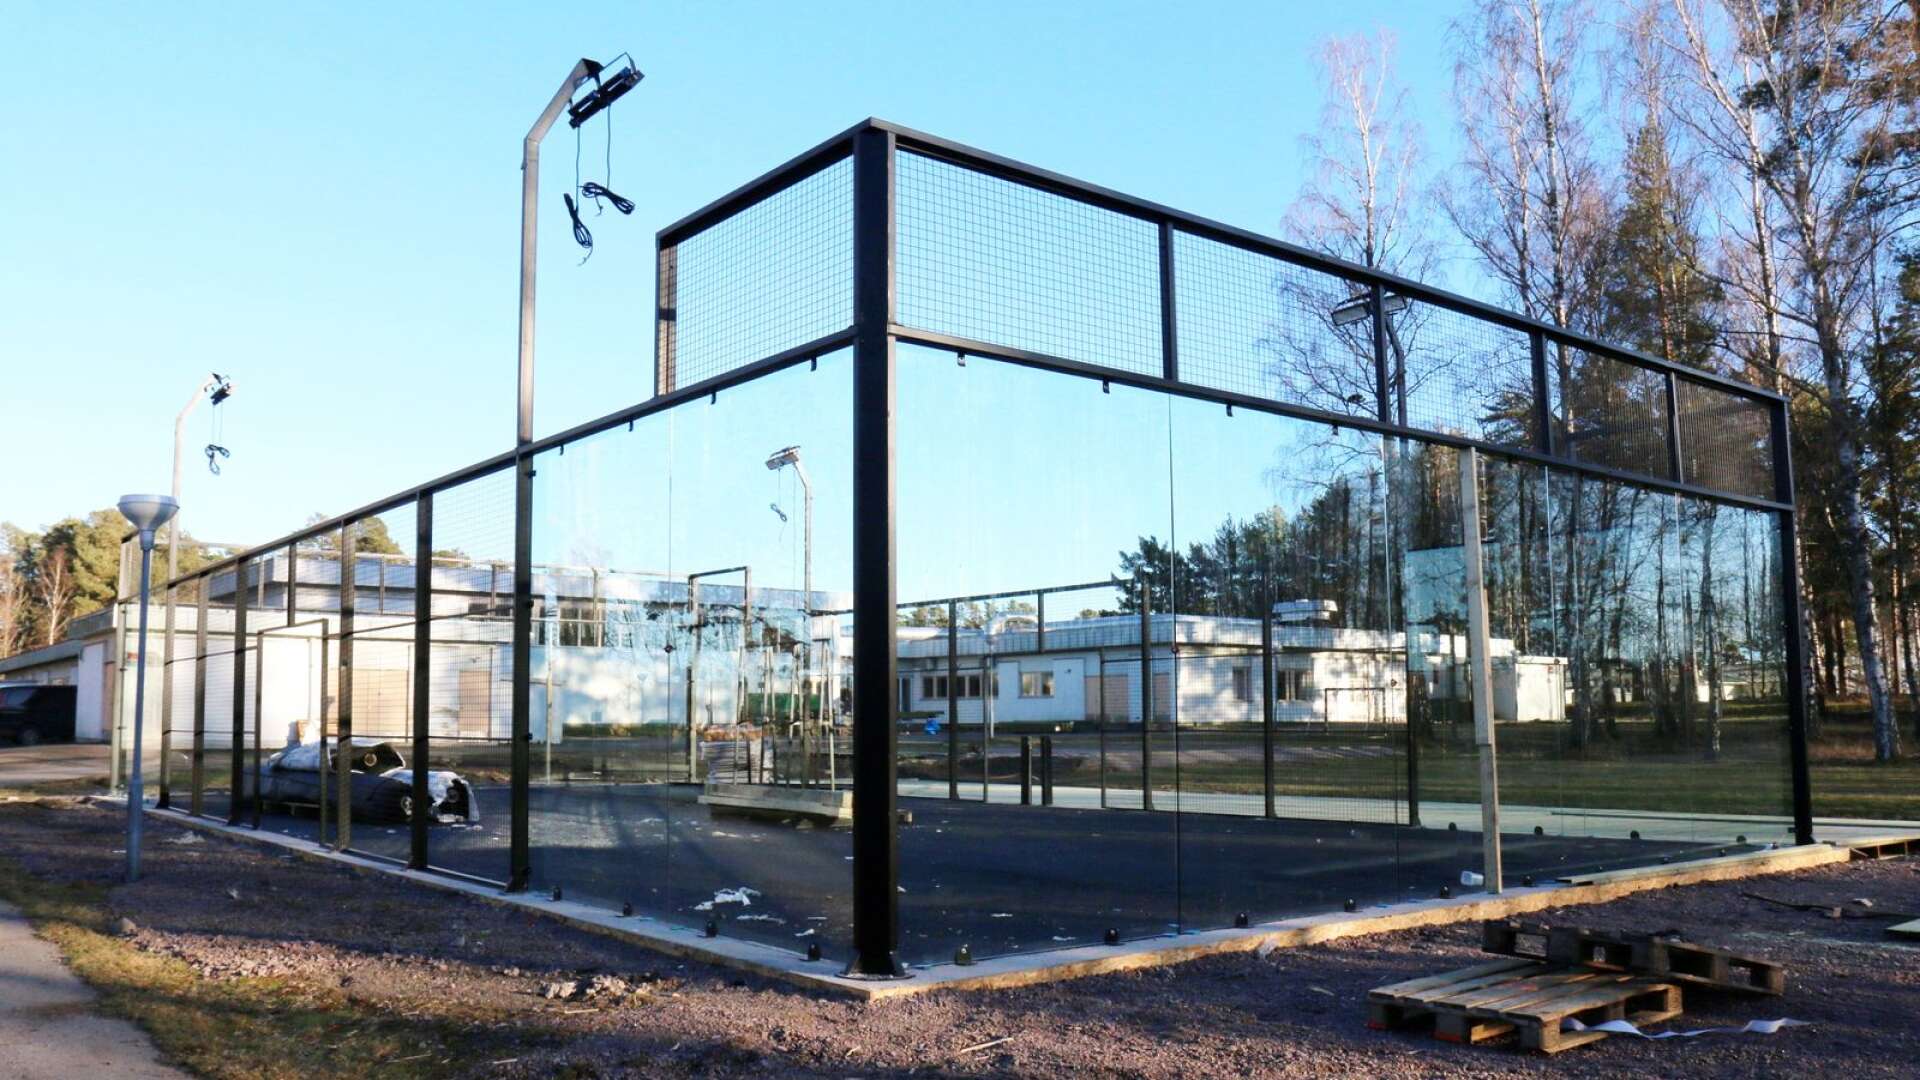 Hjo folkhögskola har byggt en utomhusbana som snart kommer att tas i bruk.